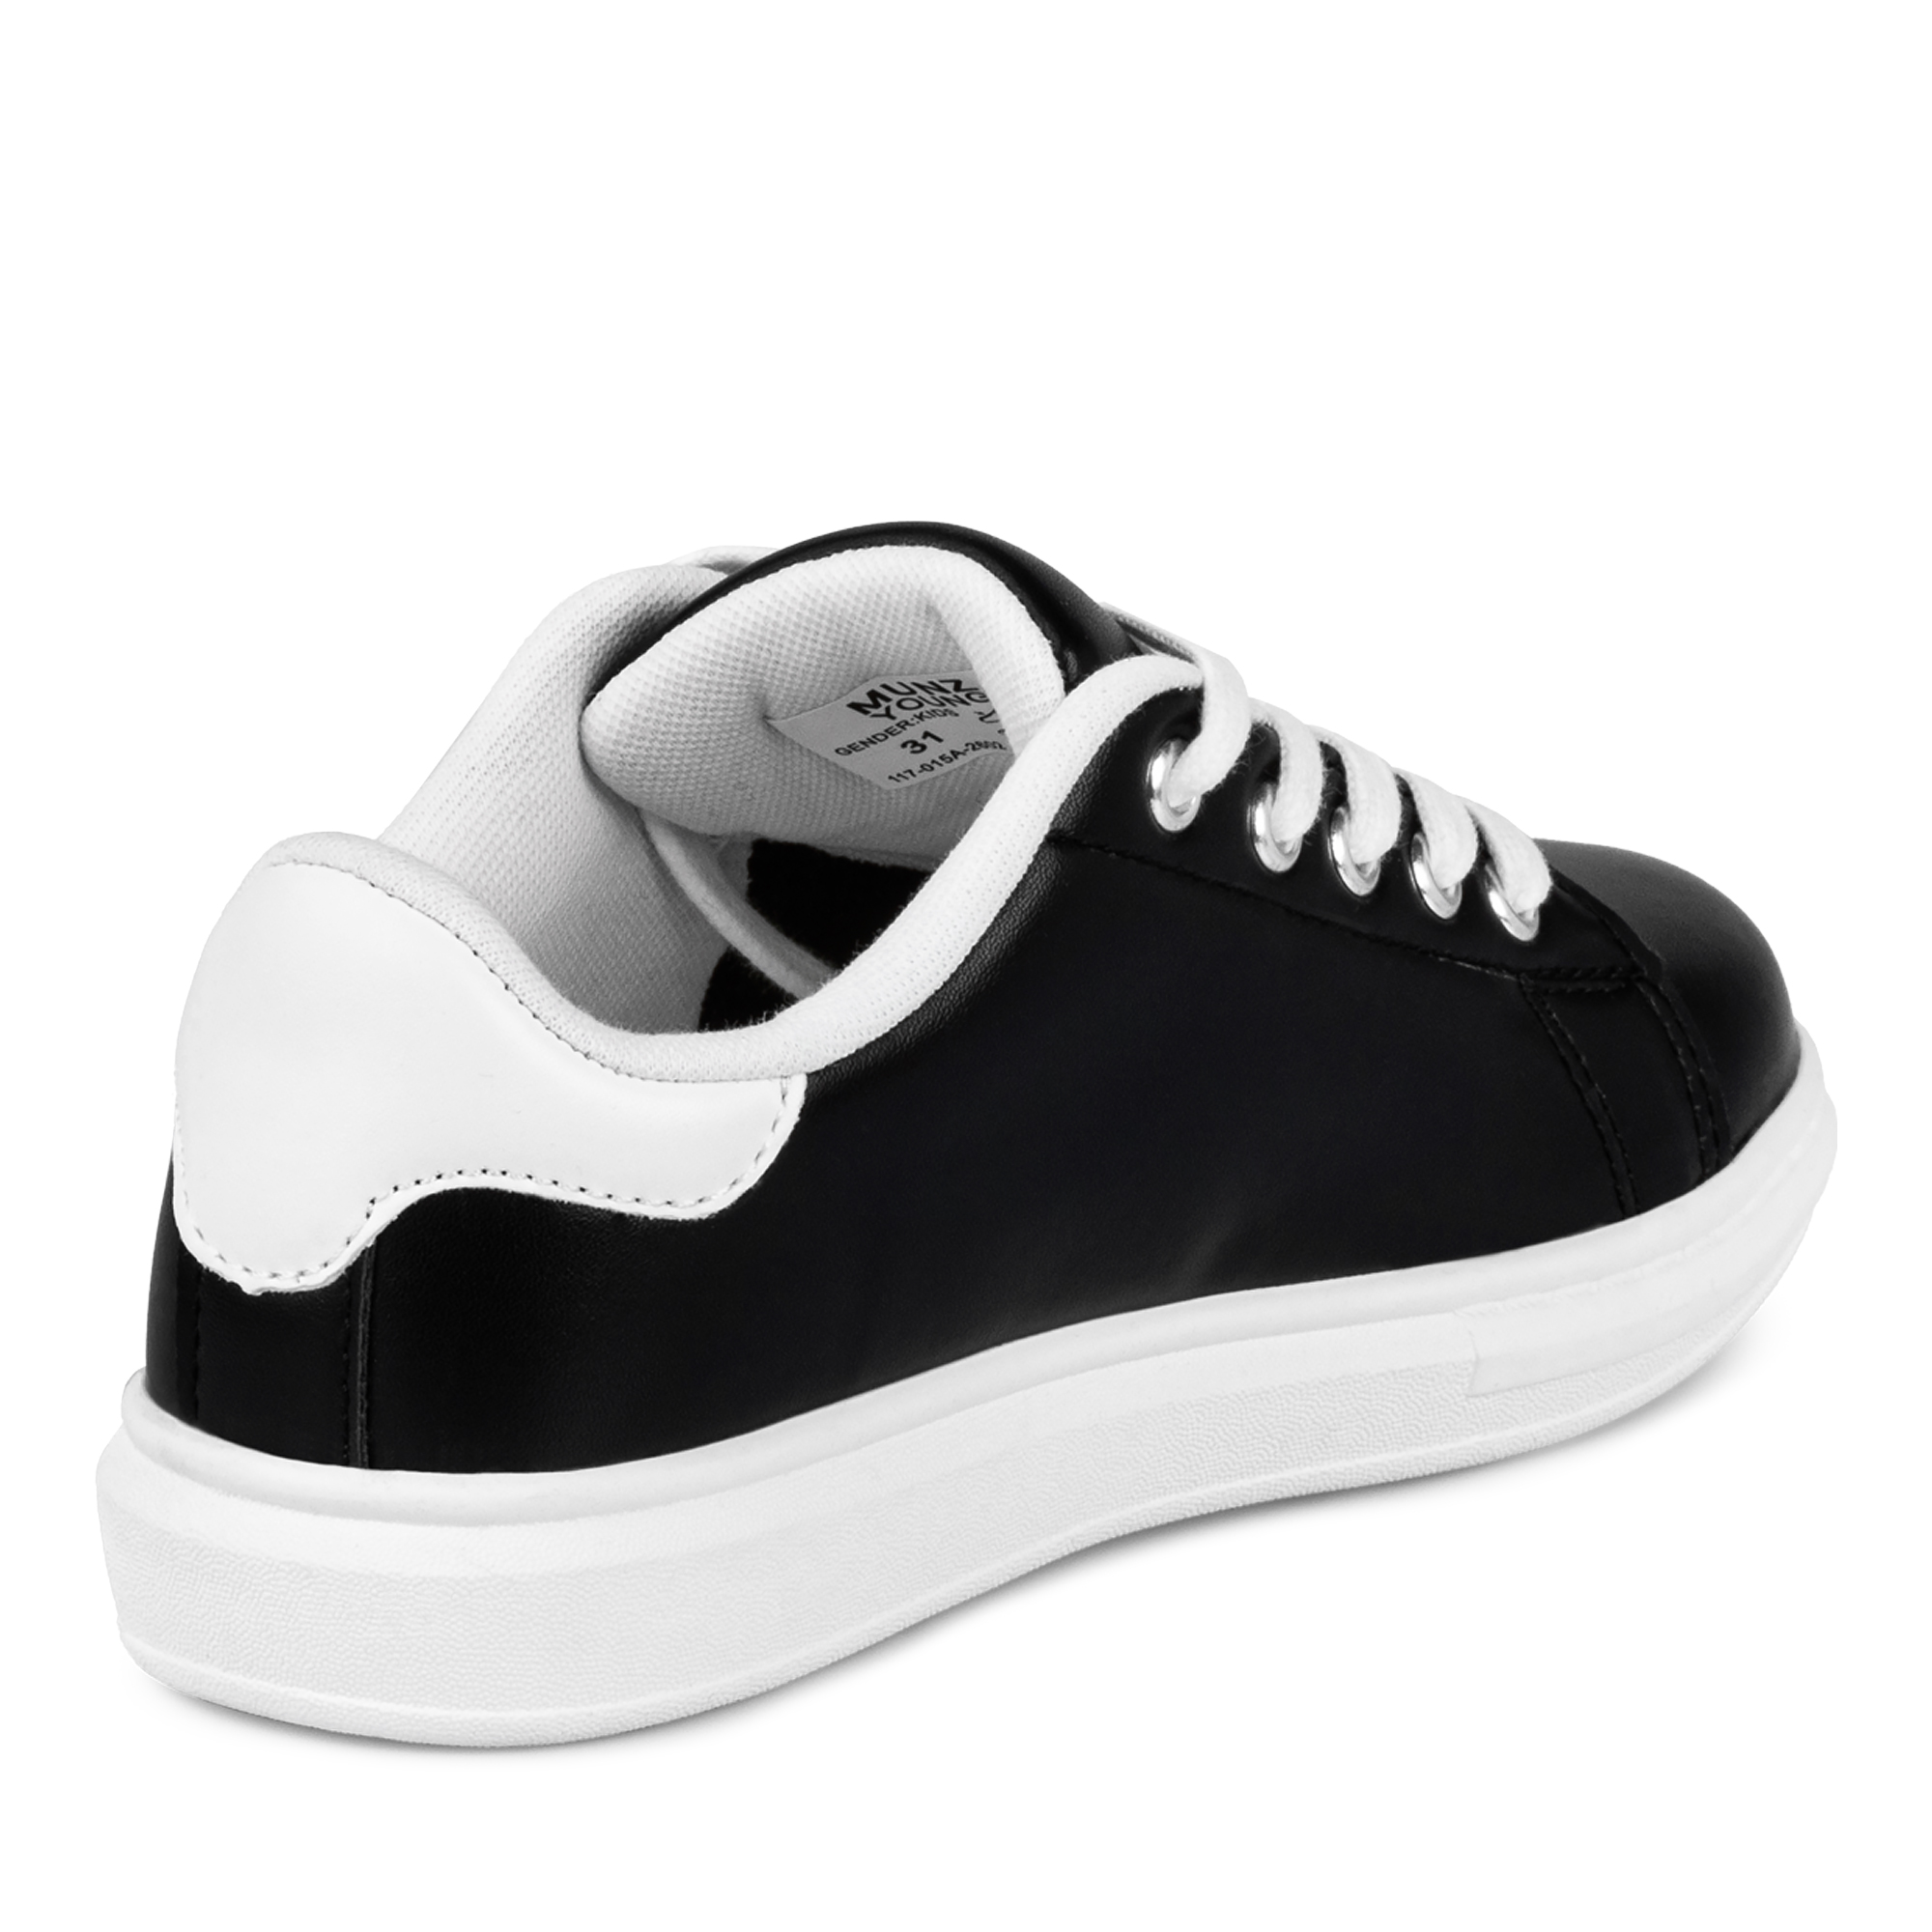 Обувь для девочек MUNZ YOUNG 117-015A-2602, цвет черный, размер 33 - фото 3